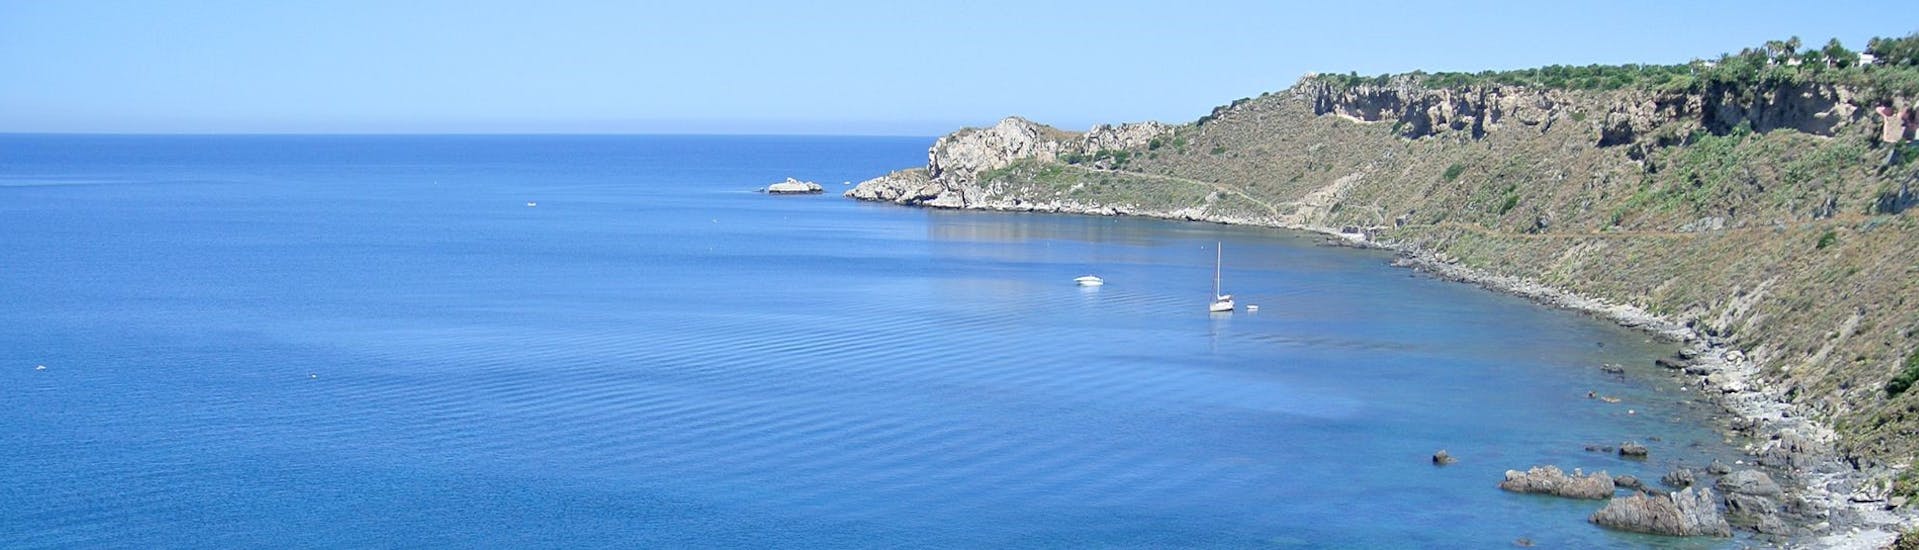 Uitzicht vanaf de boot van Sky Sea Charter tijdens de Privé Boottocht van Milazzo naar Vulcano en Lipari.